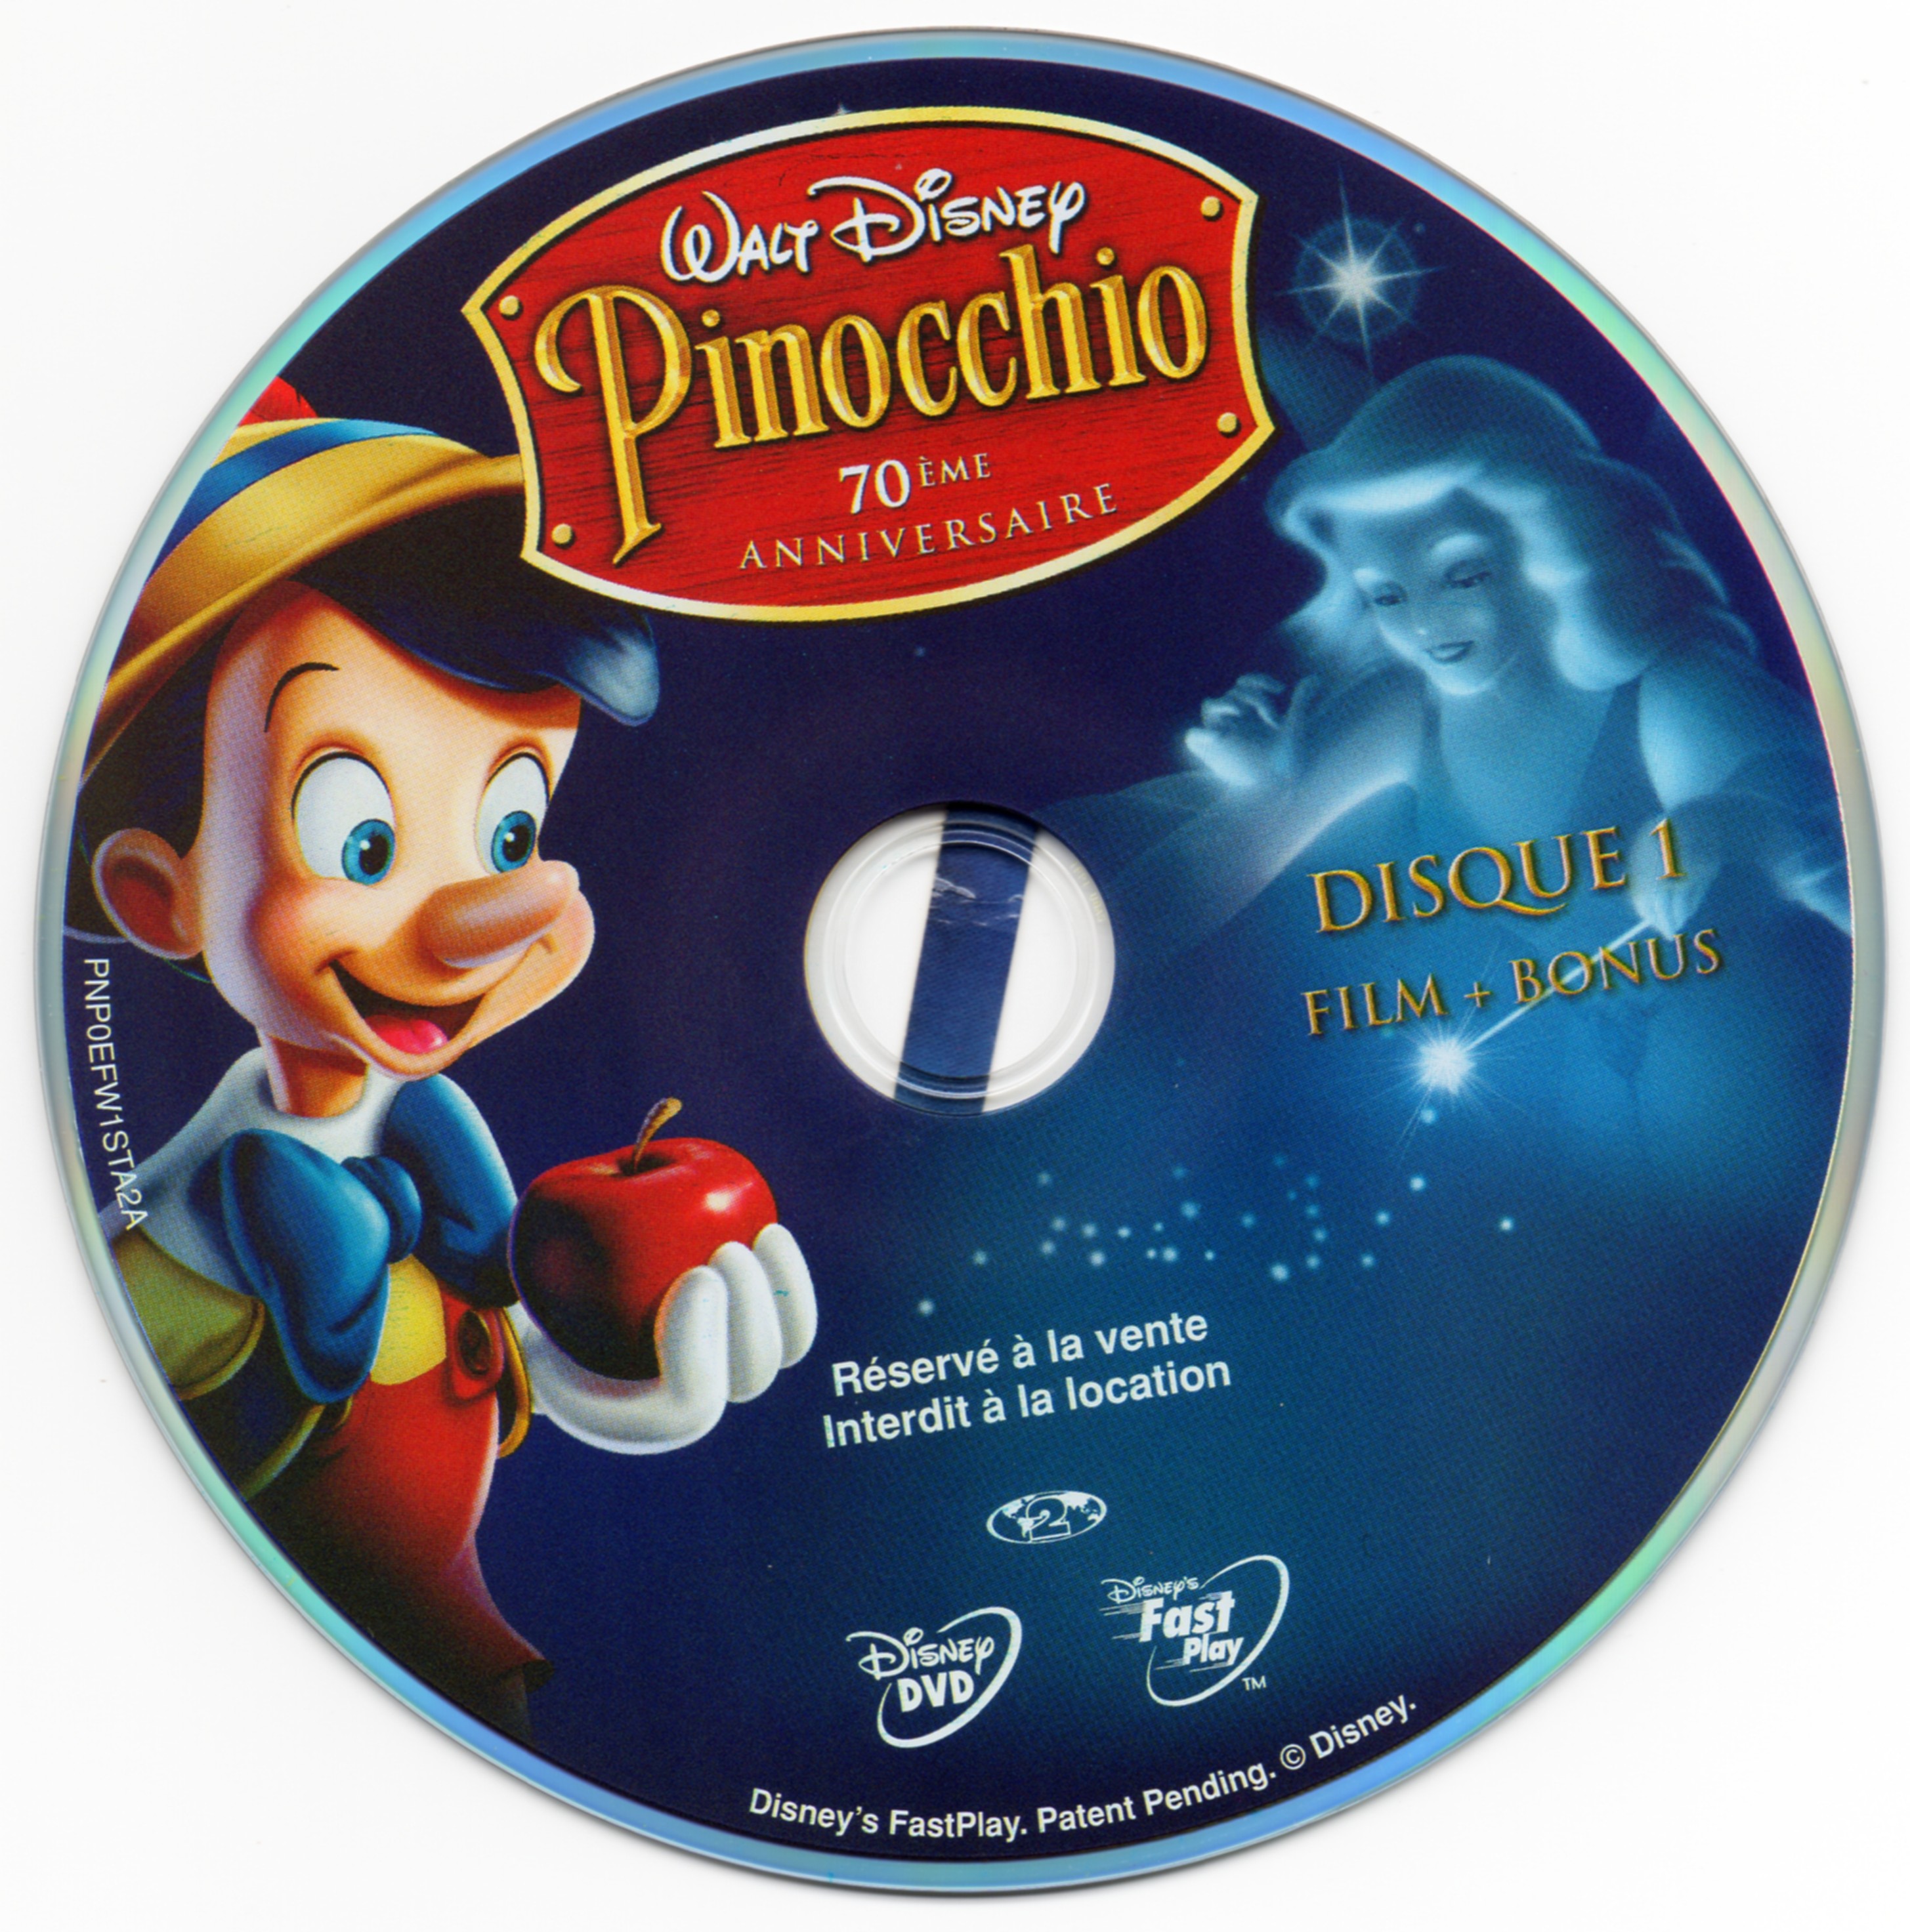 Pinocchio DISC 1